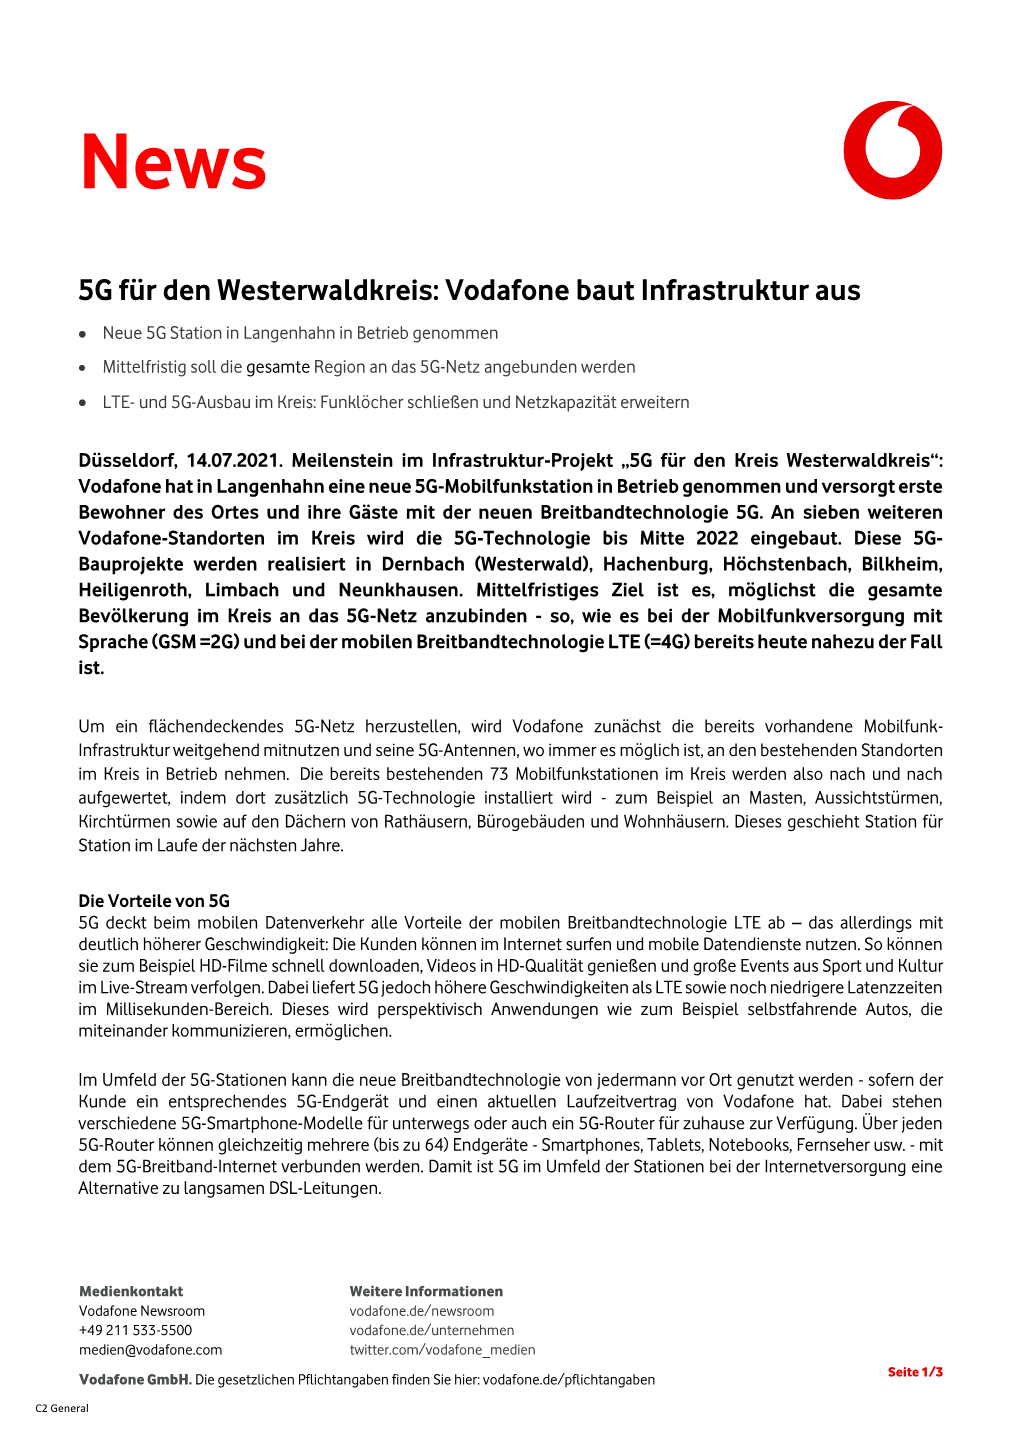 5G Für Den Westerwaldkreis: Vodafone Baut Infrastruktur